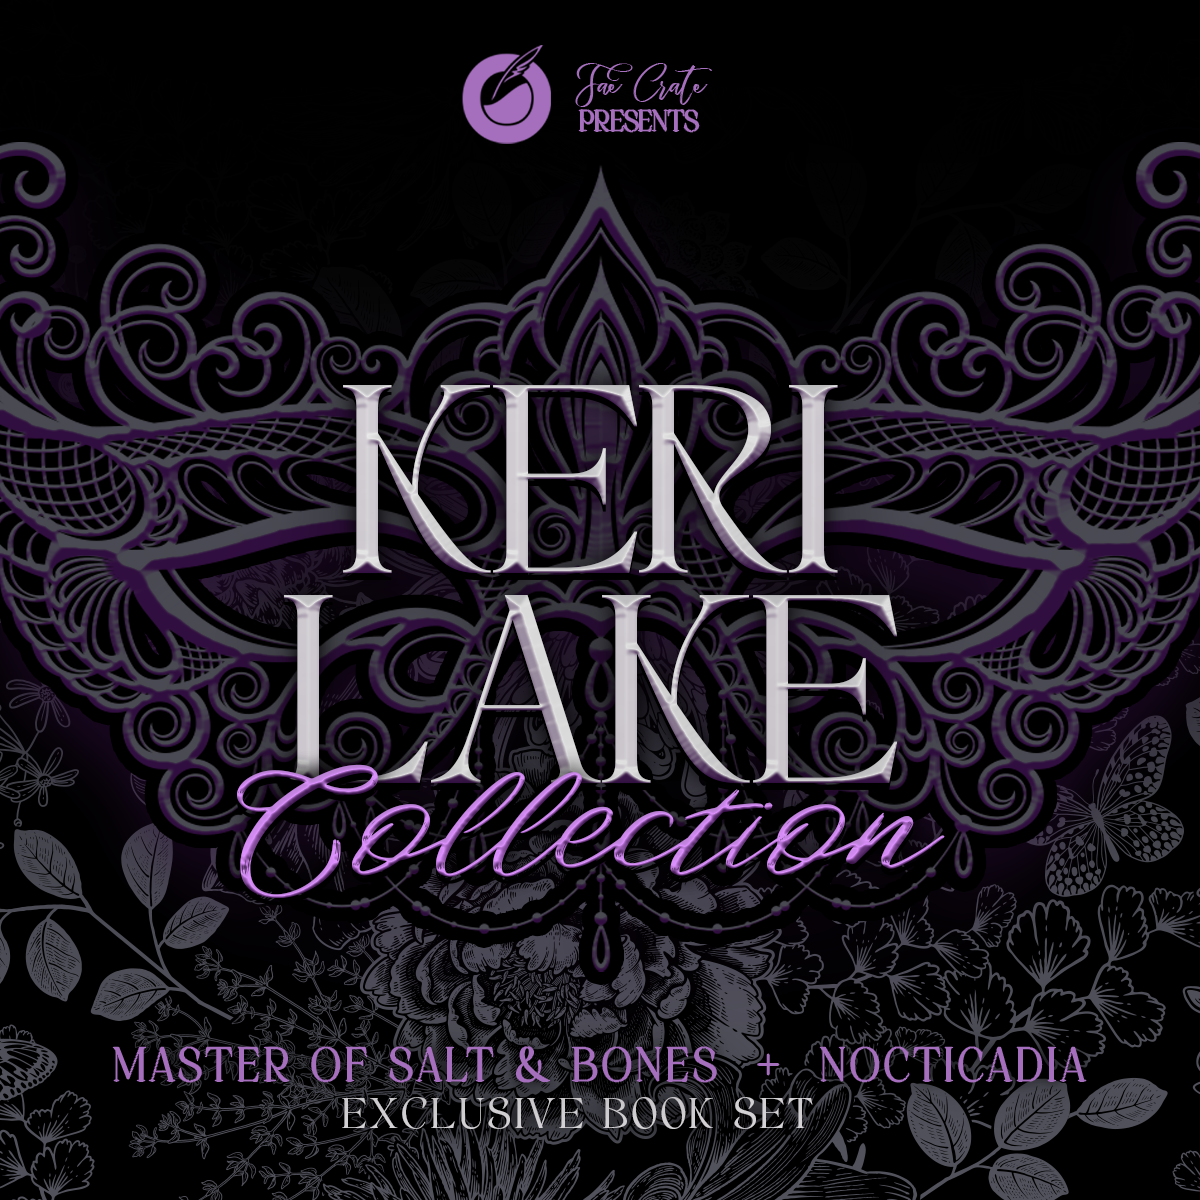 Keri Lake Collection